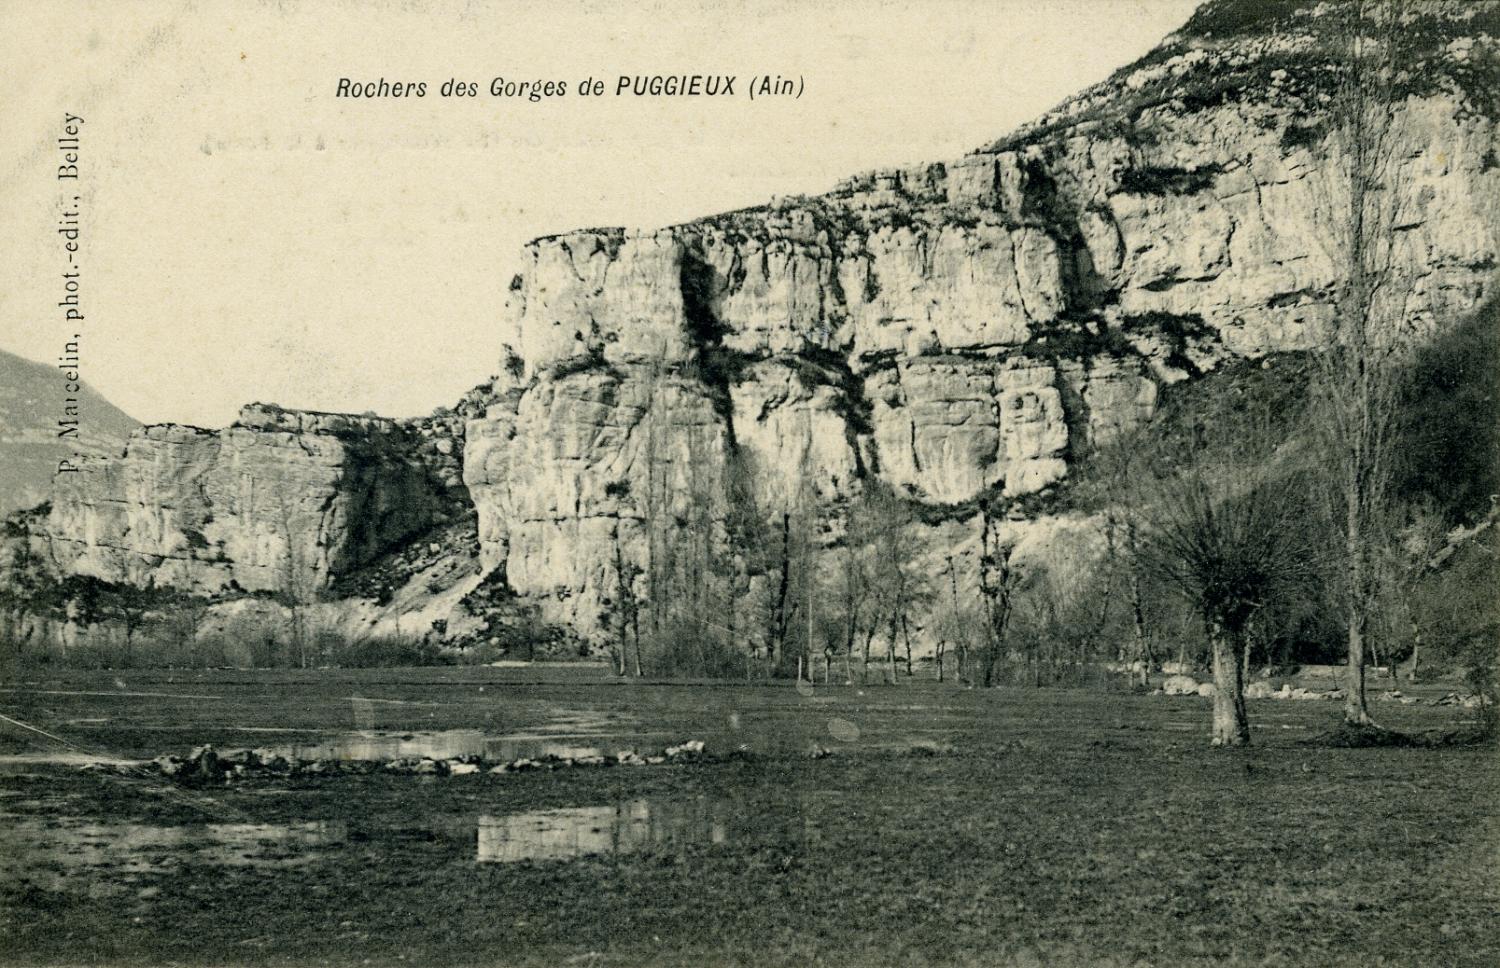 Rochers des Gorges de Puggieux (Ain)